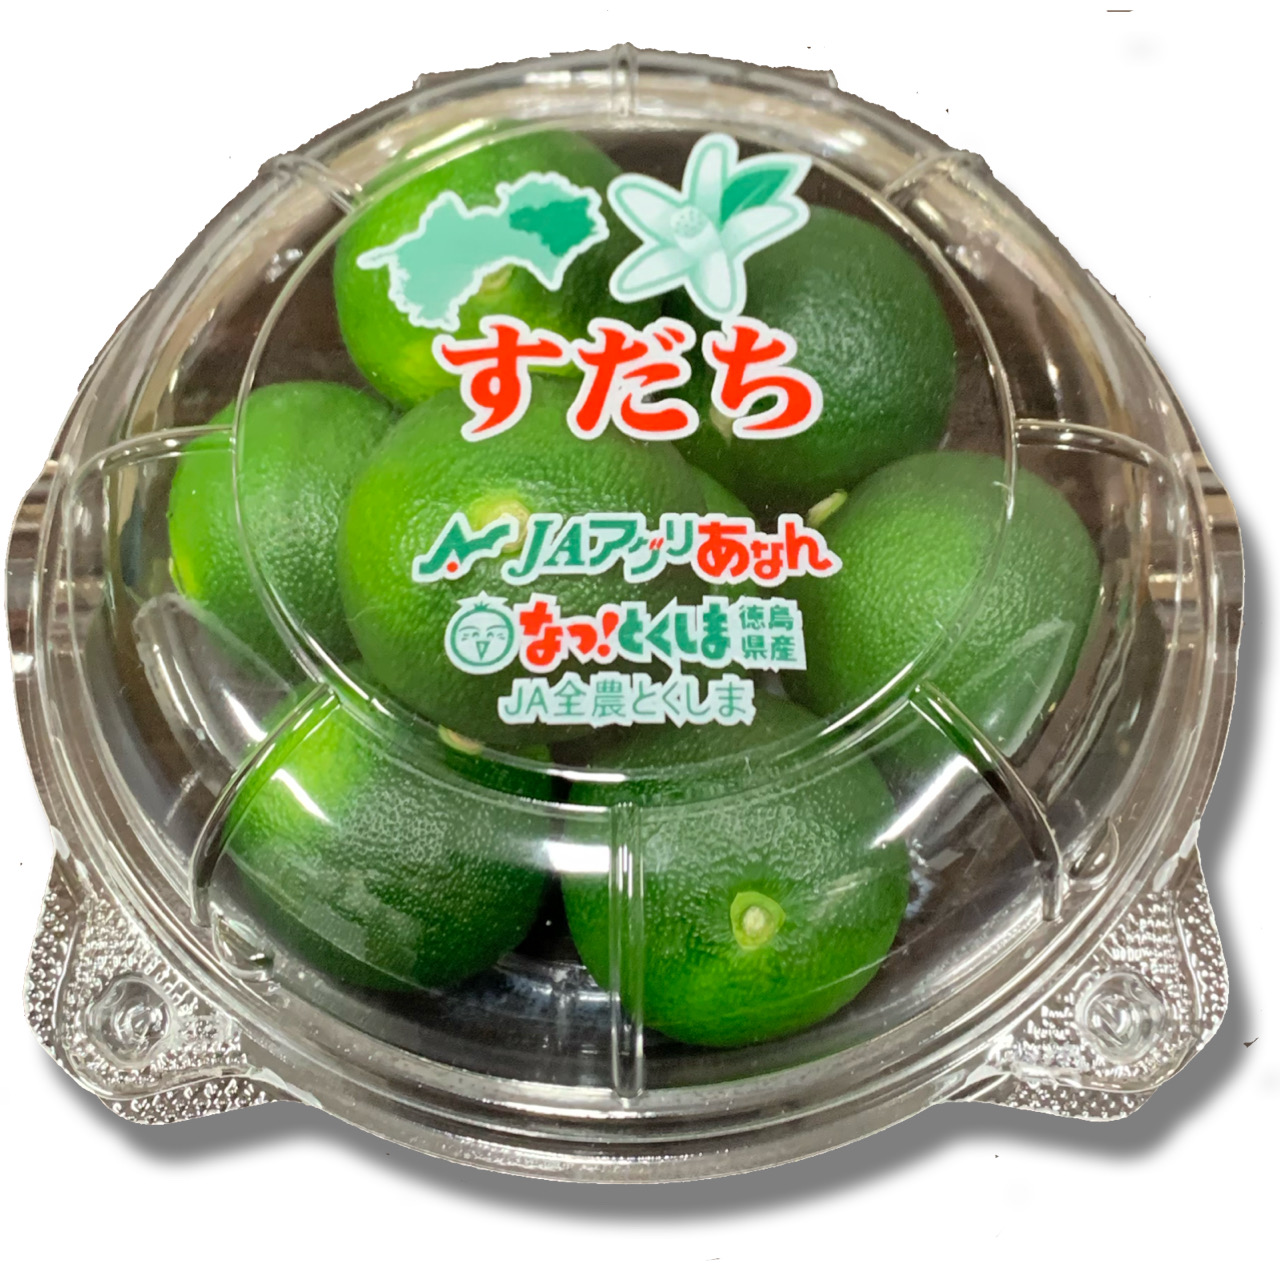 VX_`/Seasonal sudachi citrus